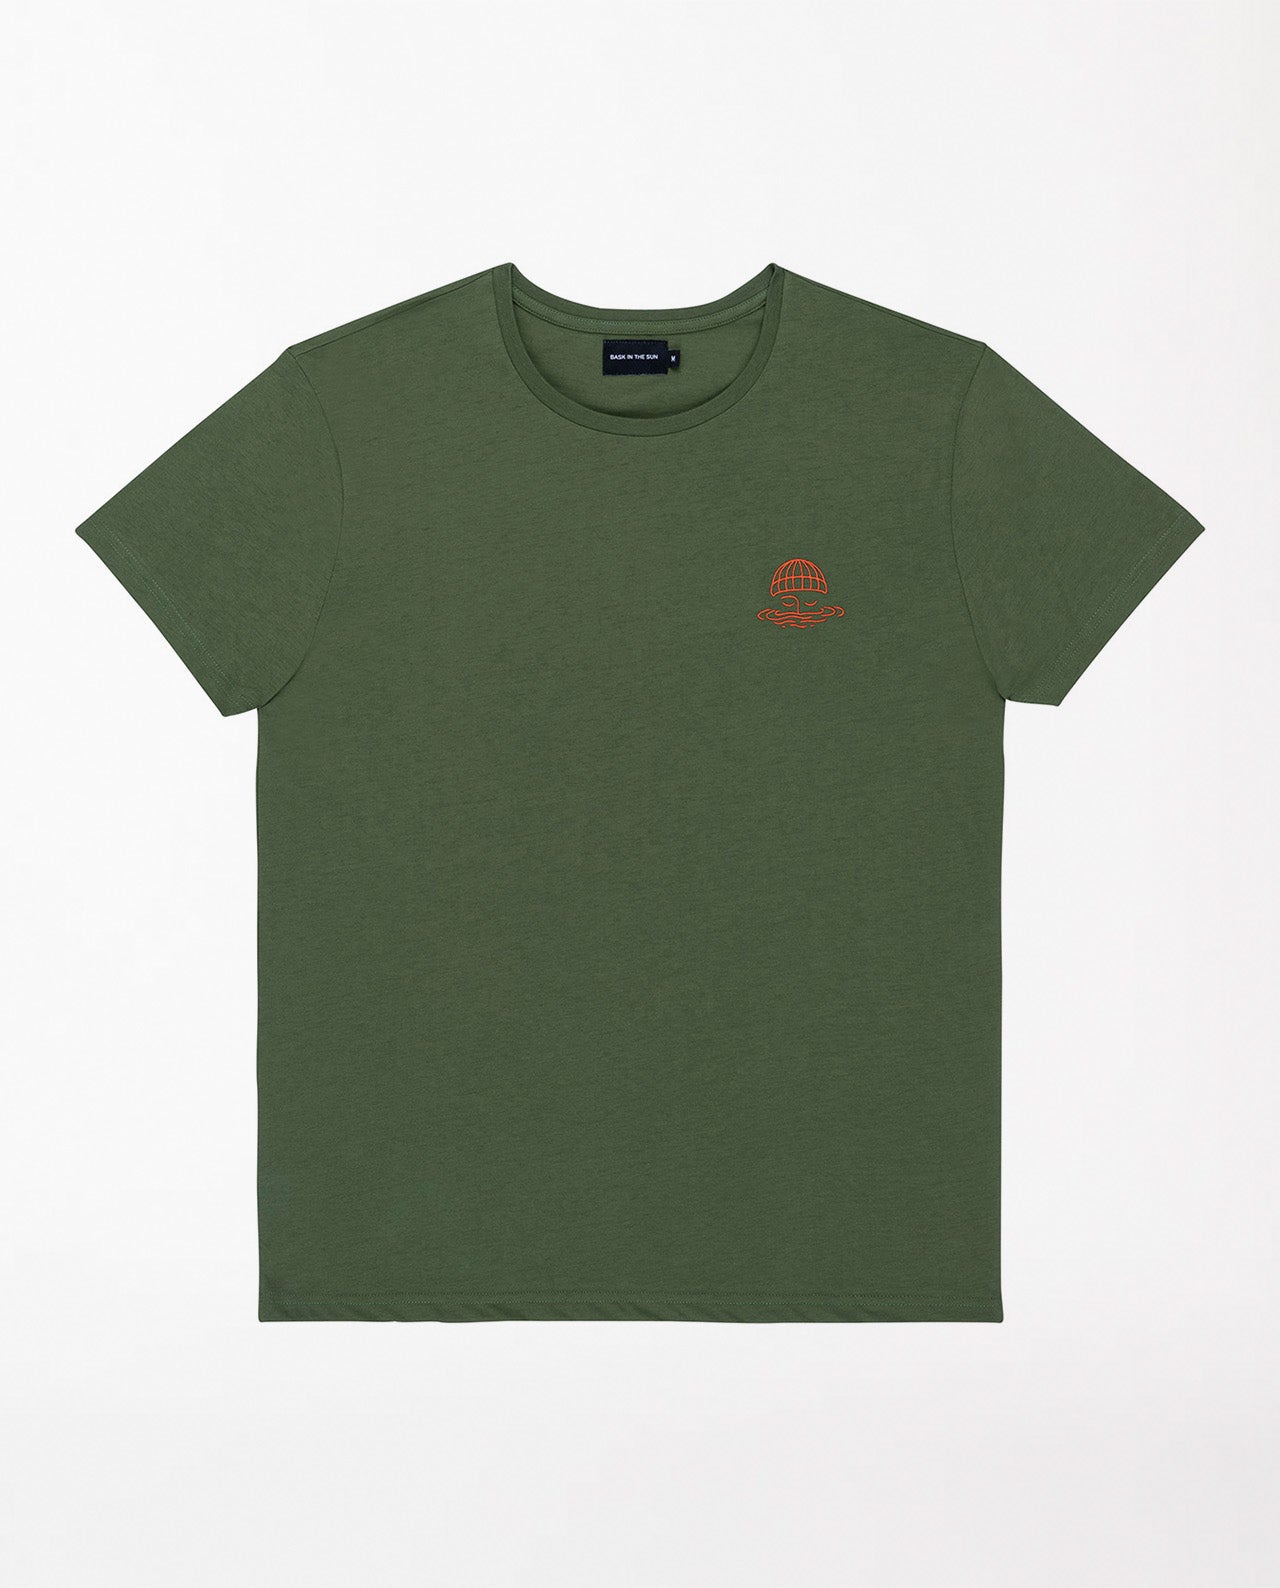 marché commun bask in the sun t-shirt homme coton biologique imprimé kaki éco-responsable logo marin 